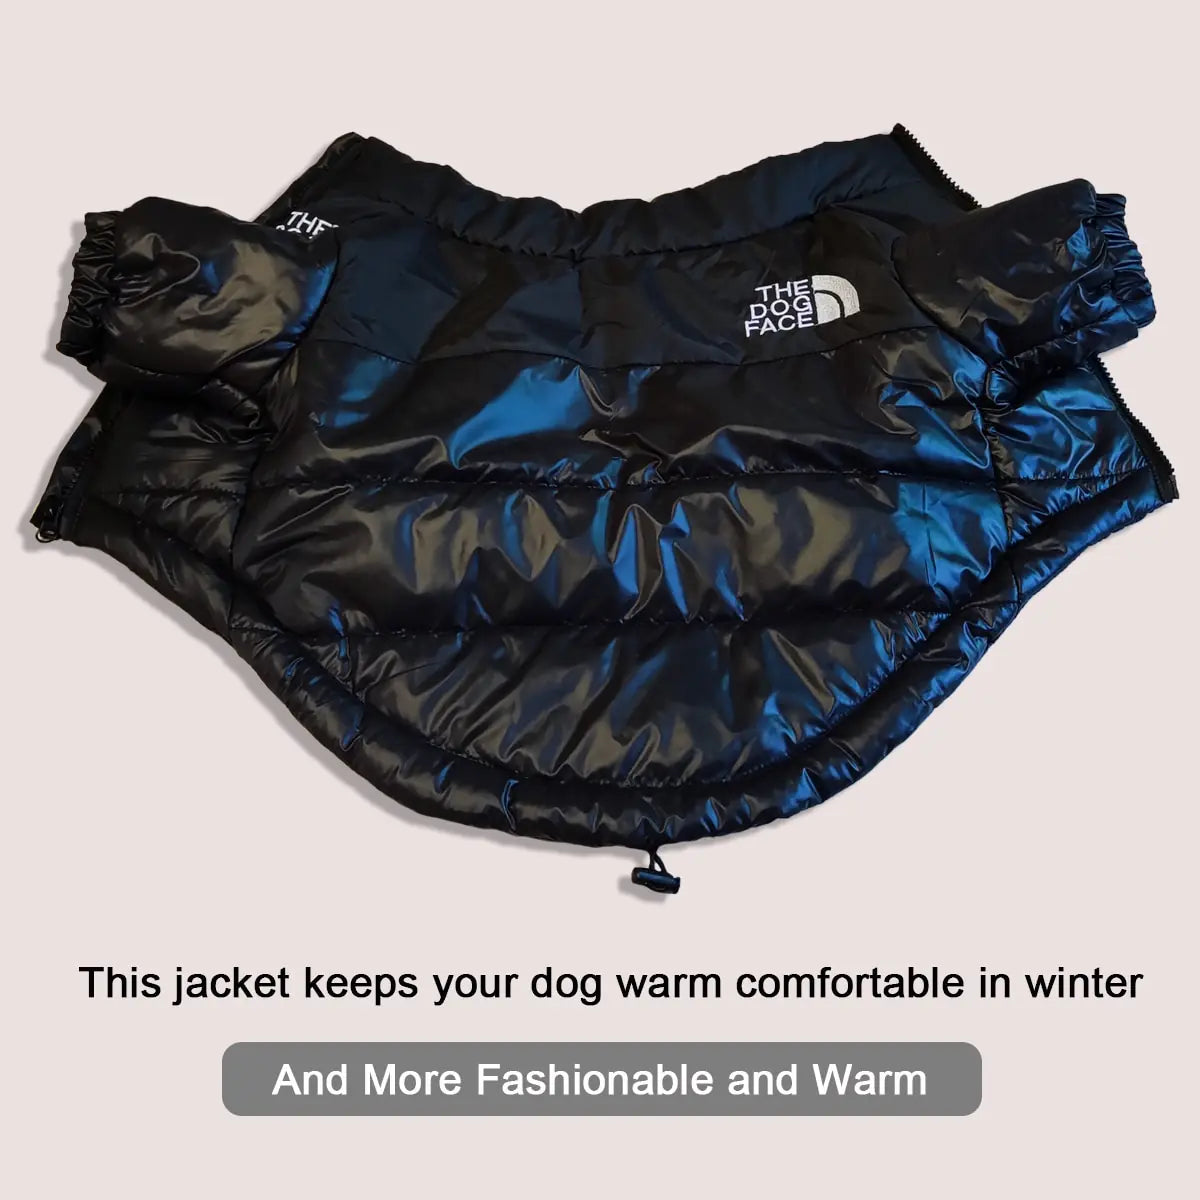 Windproof Reflective Dog Jacket "The Dog Face"